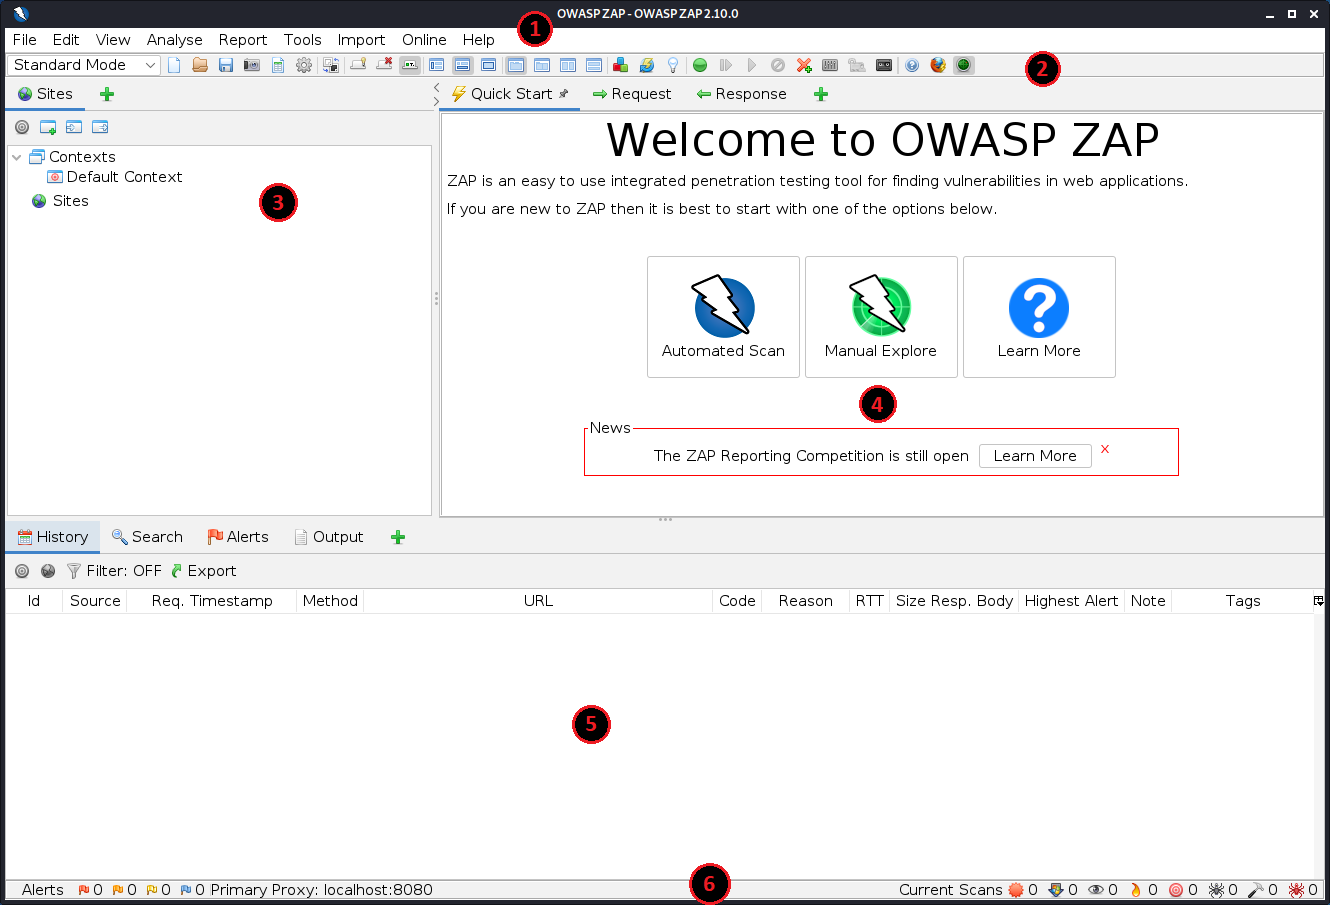 OWASP ZAP screen